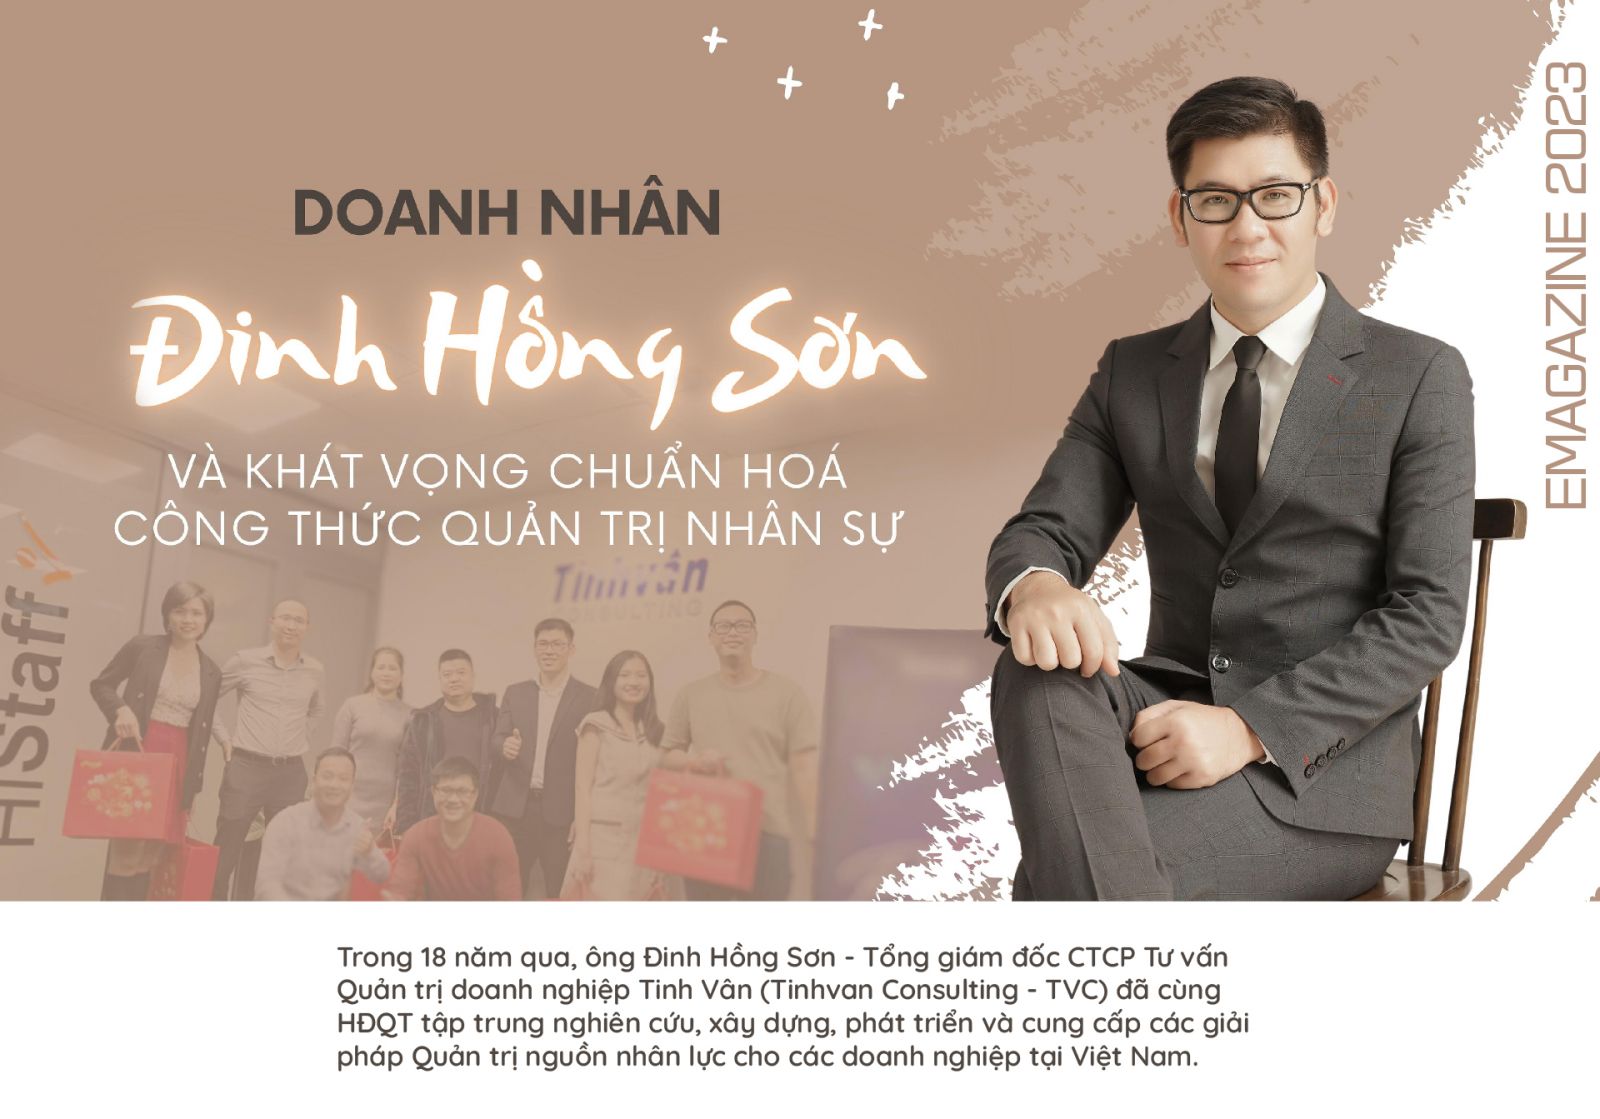 Emagazine-Doanh-nhan-inh-hong-Sn-01